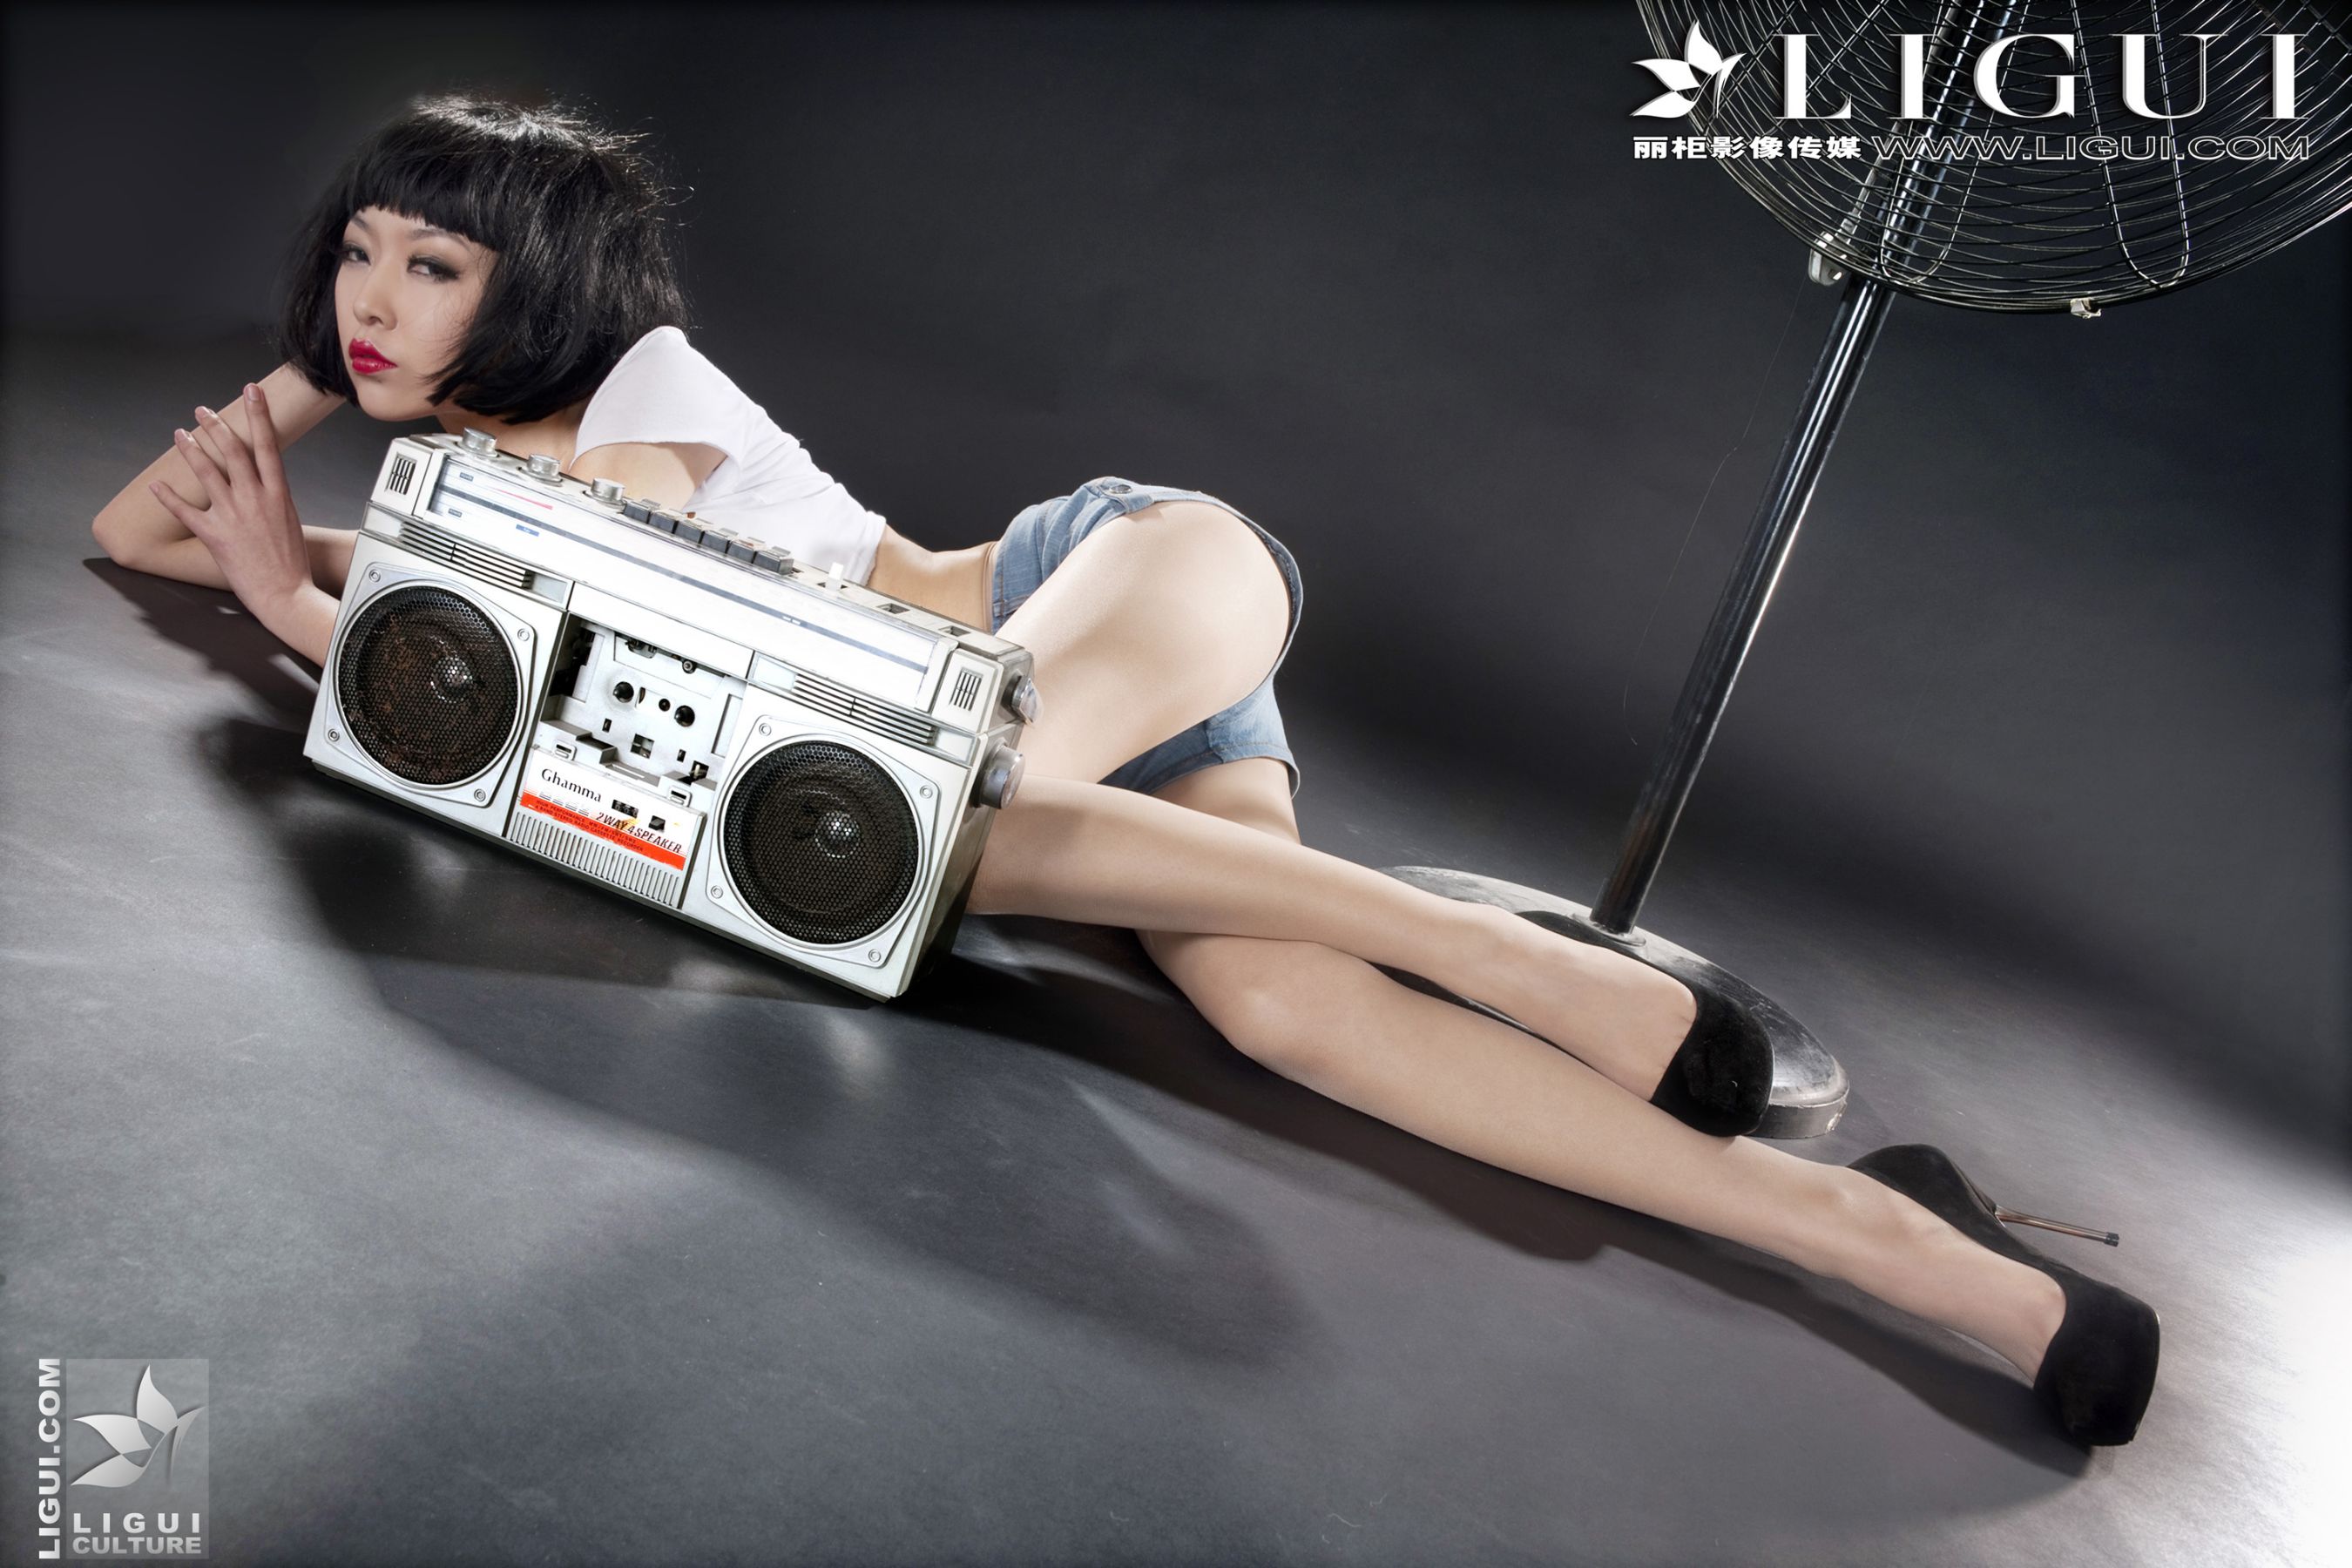 [丽柜贵足LiGui] Model Wenxin "Fashionable Denim Hot Pants Girl" Beautiful Legs and Silky Feet Photo Picture Page 7 No.1f13fe